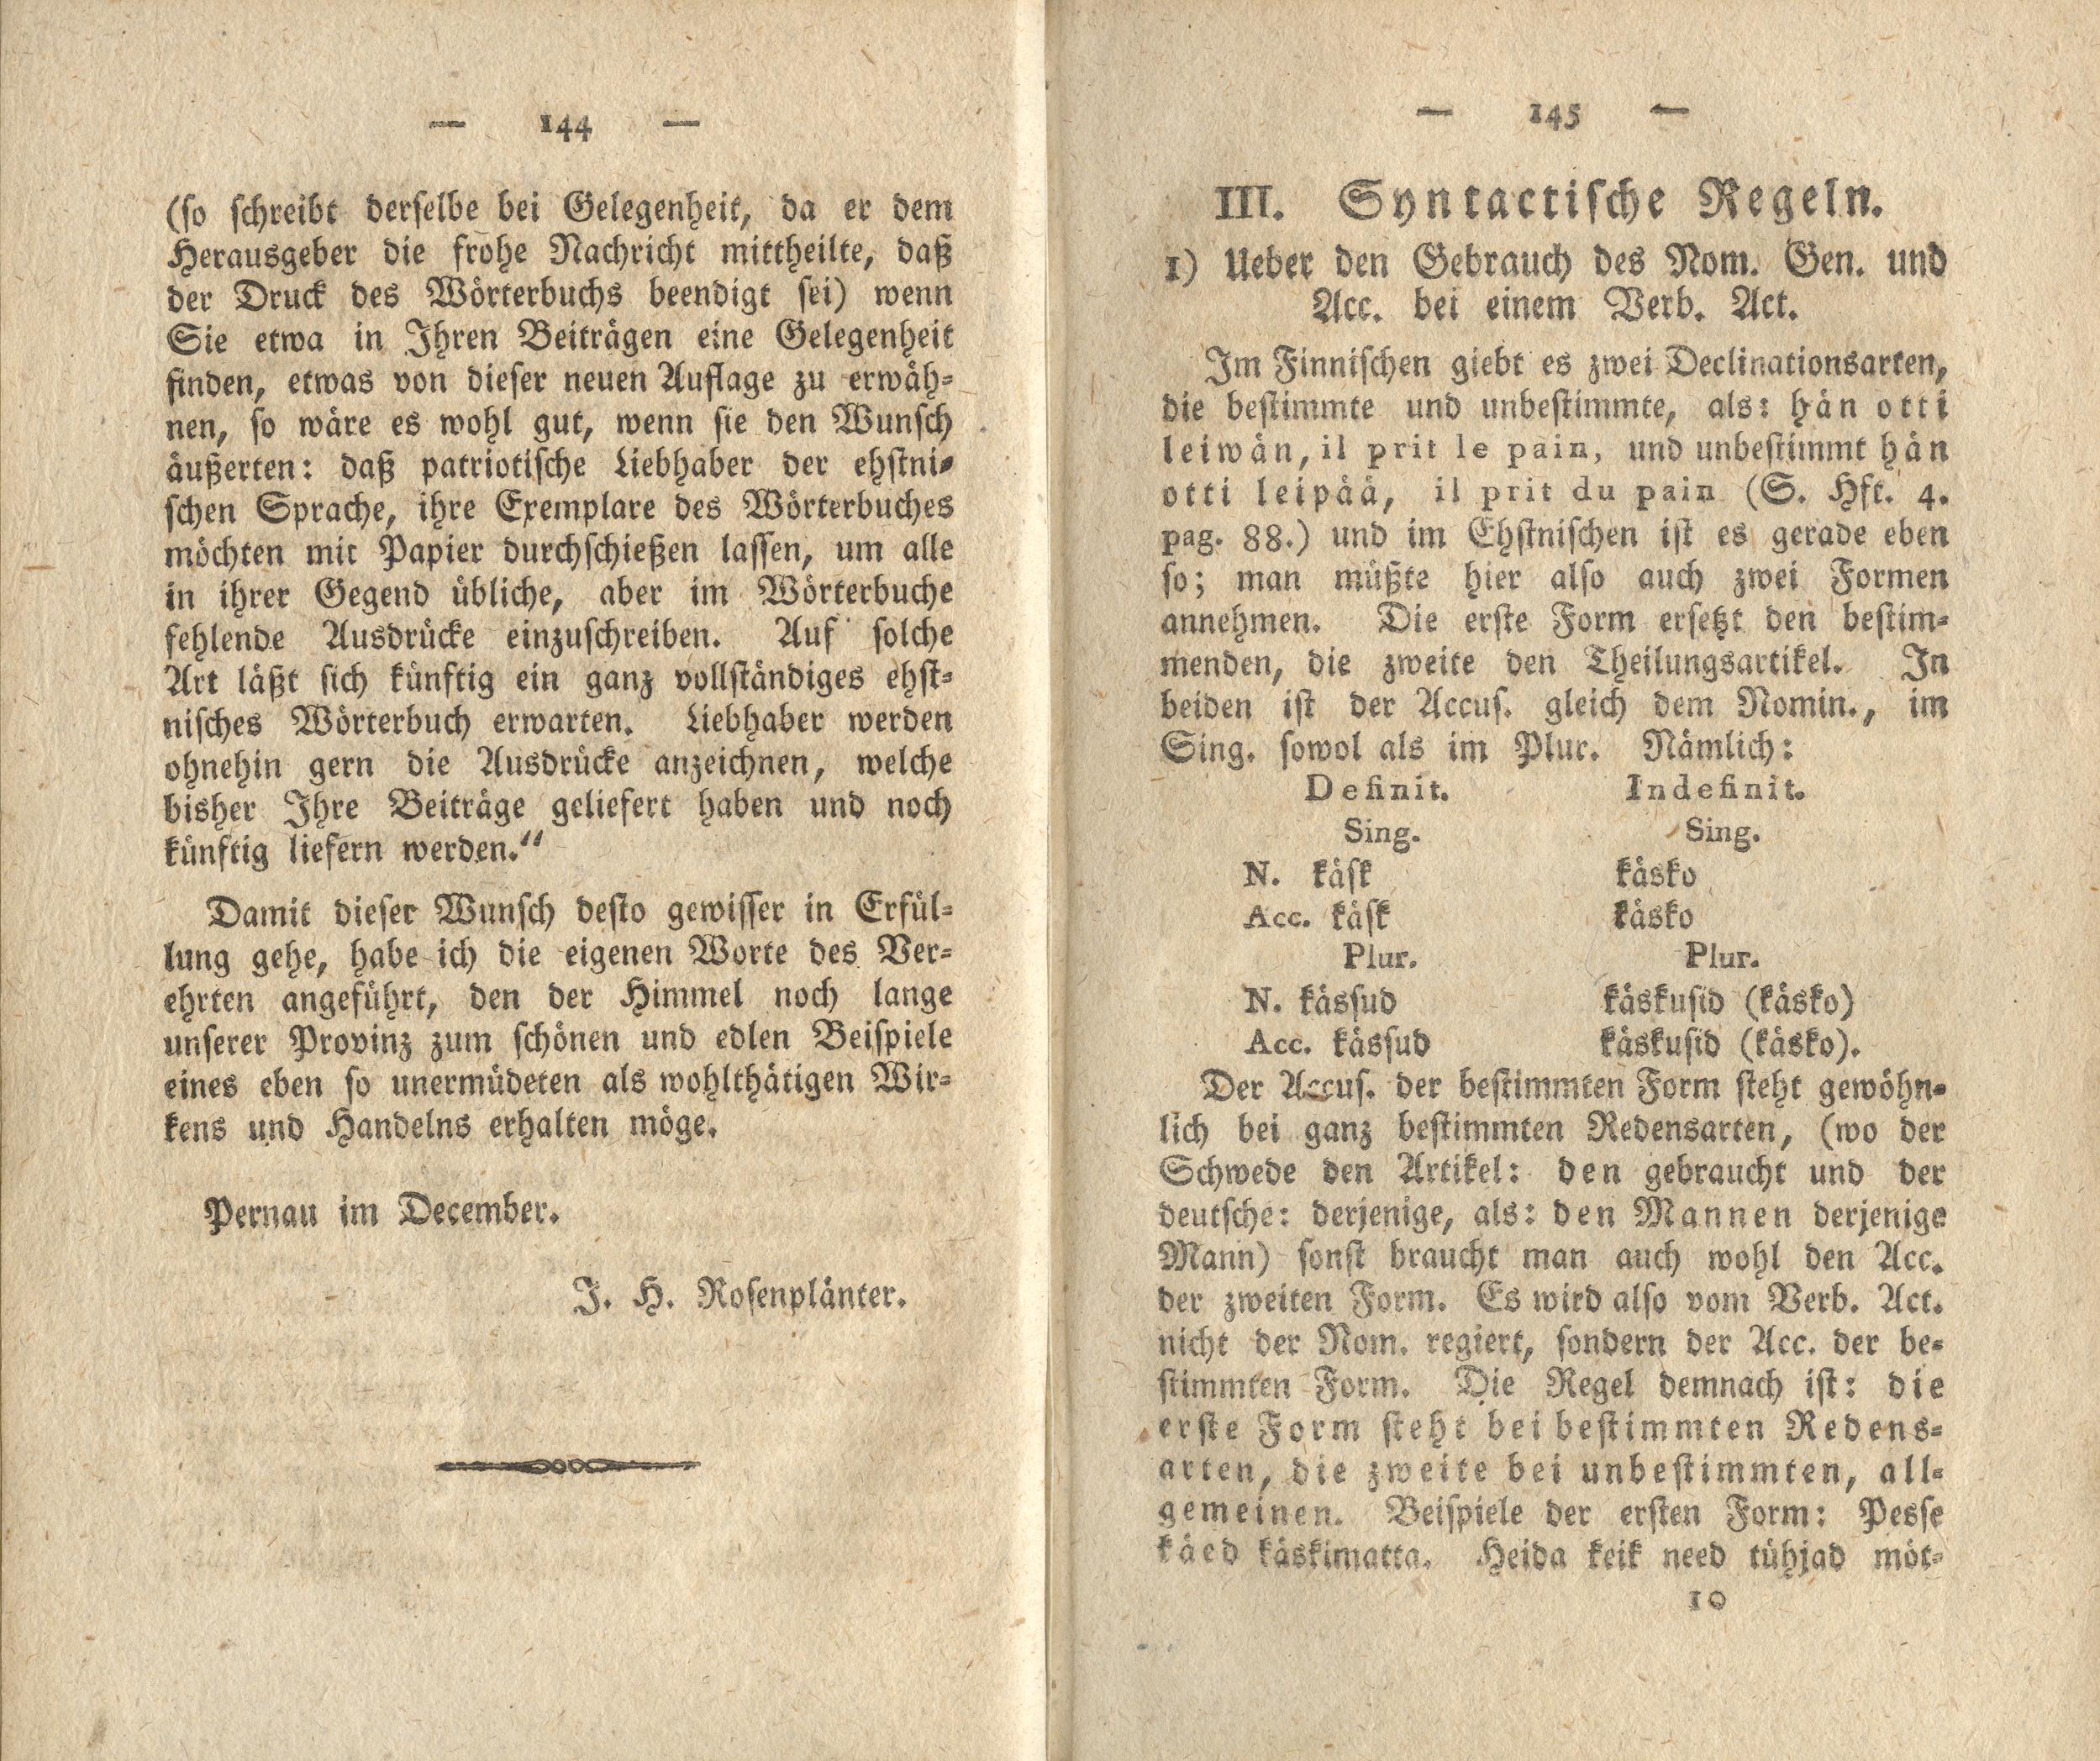 Ueber den Gebrauch des Nom. Gen. und Acc. bei einem Verb. Act. (1818) | 1. (144-145) Основной текст